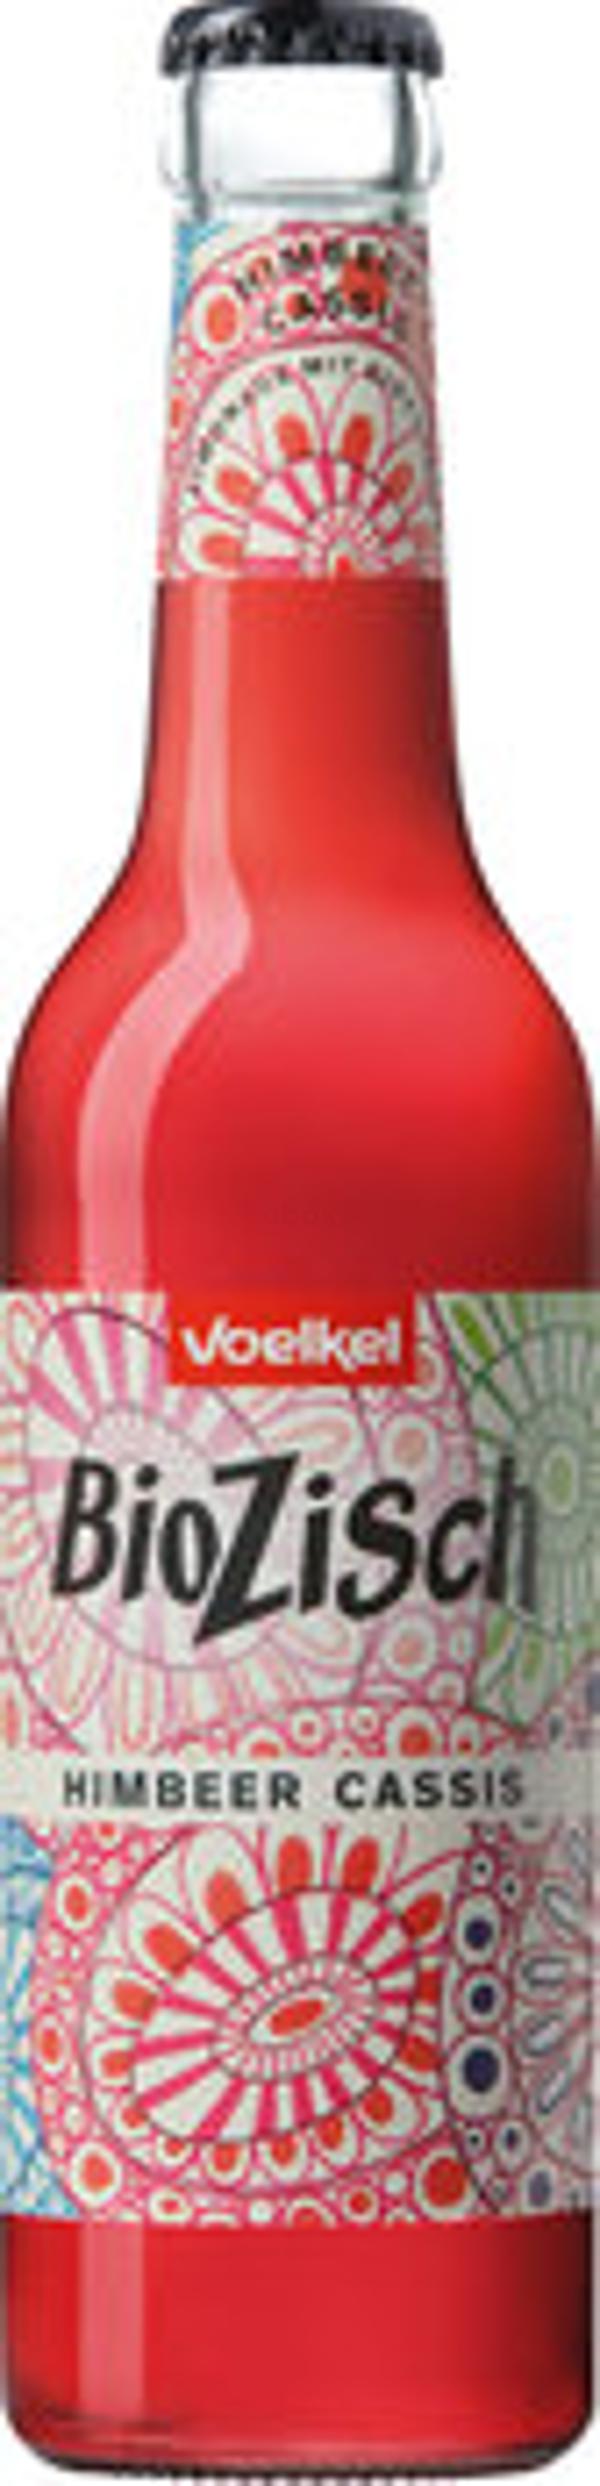 Produktfoto zu BioZisch Himbeer Cassis, 10x0,33 l